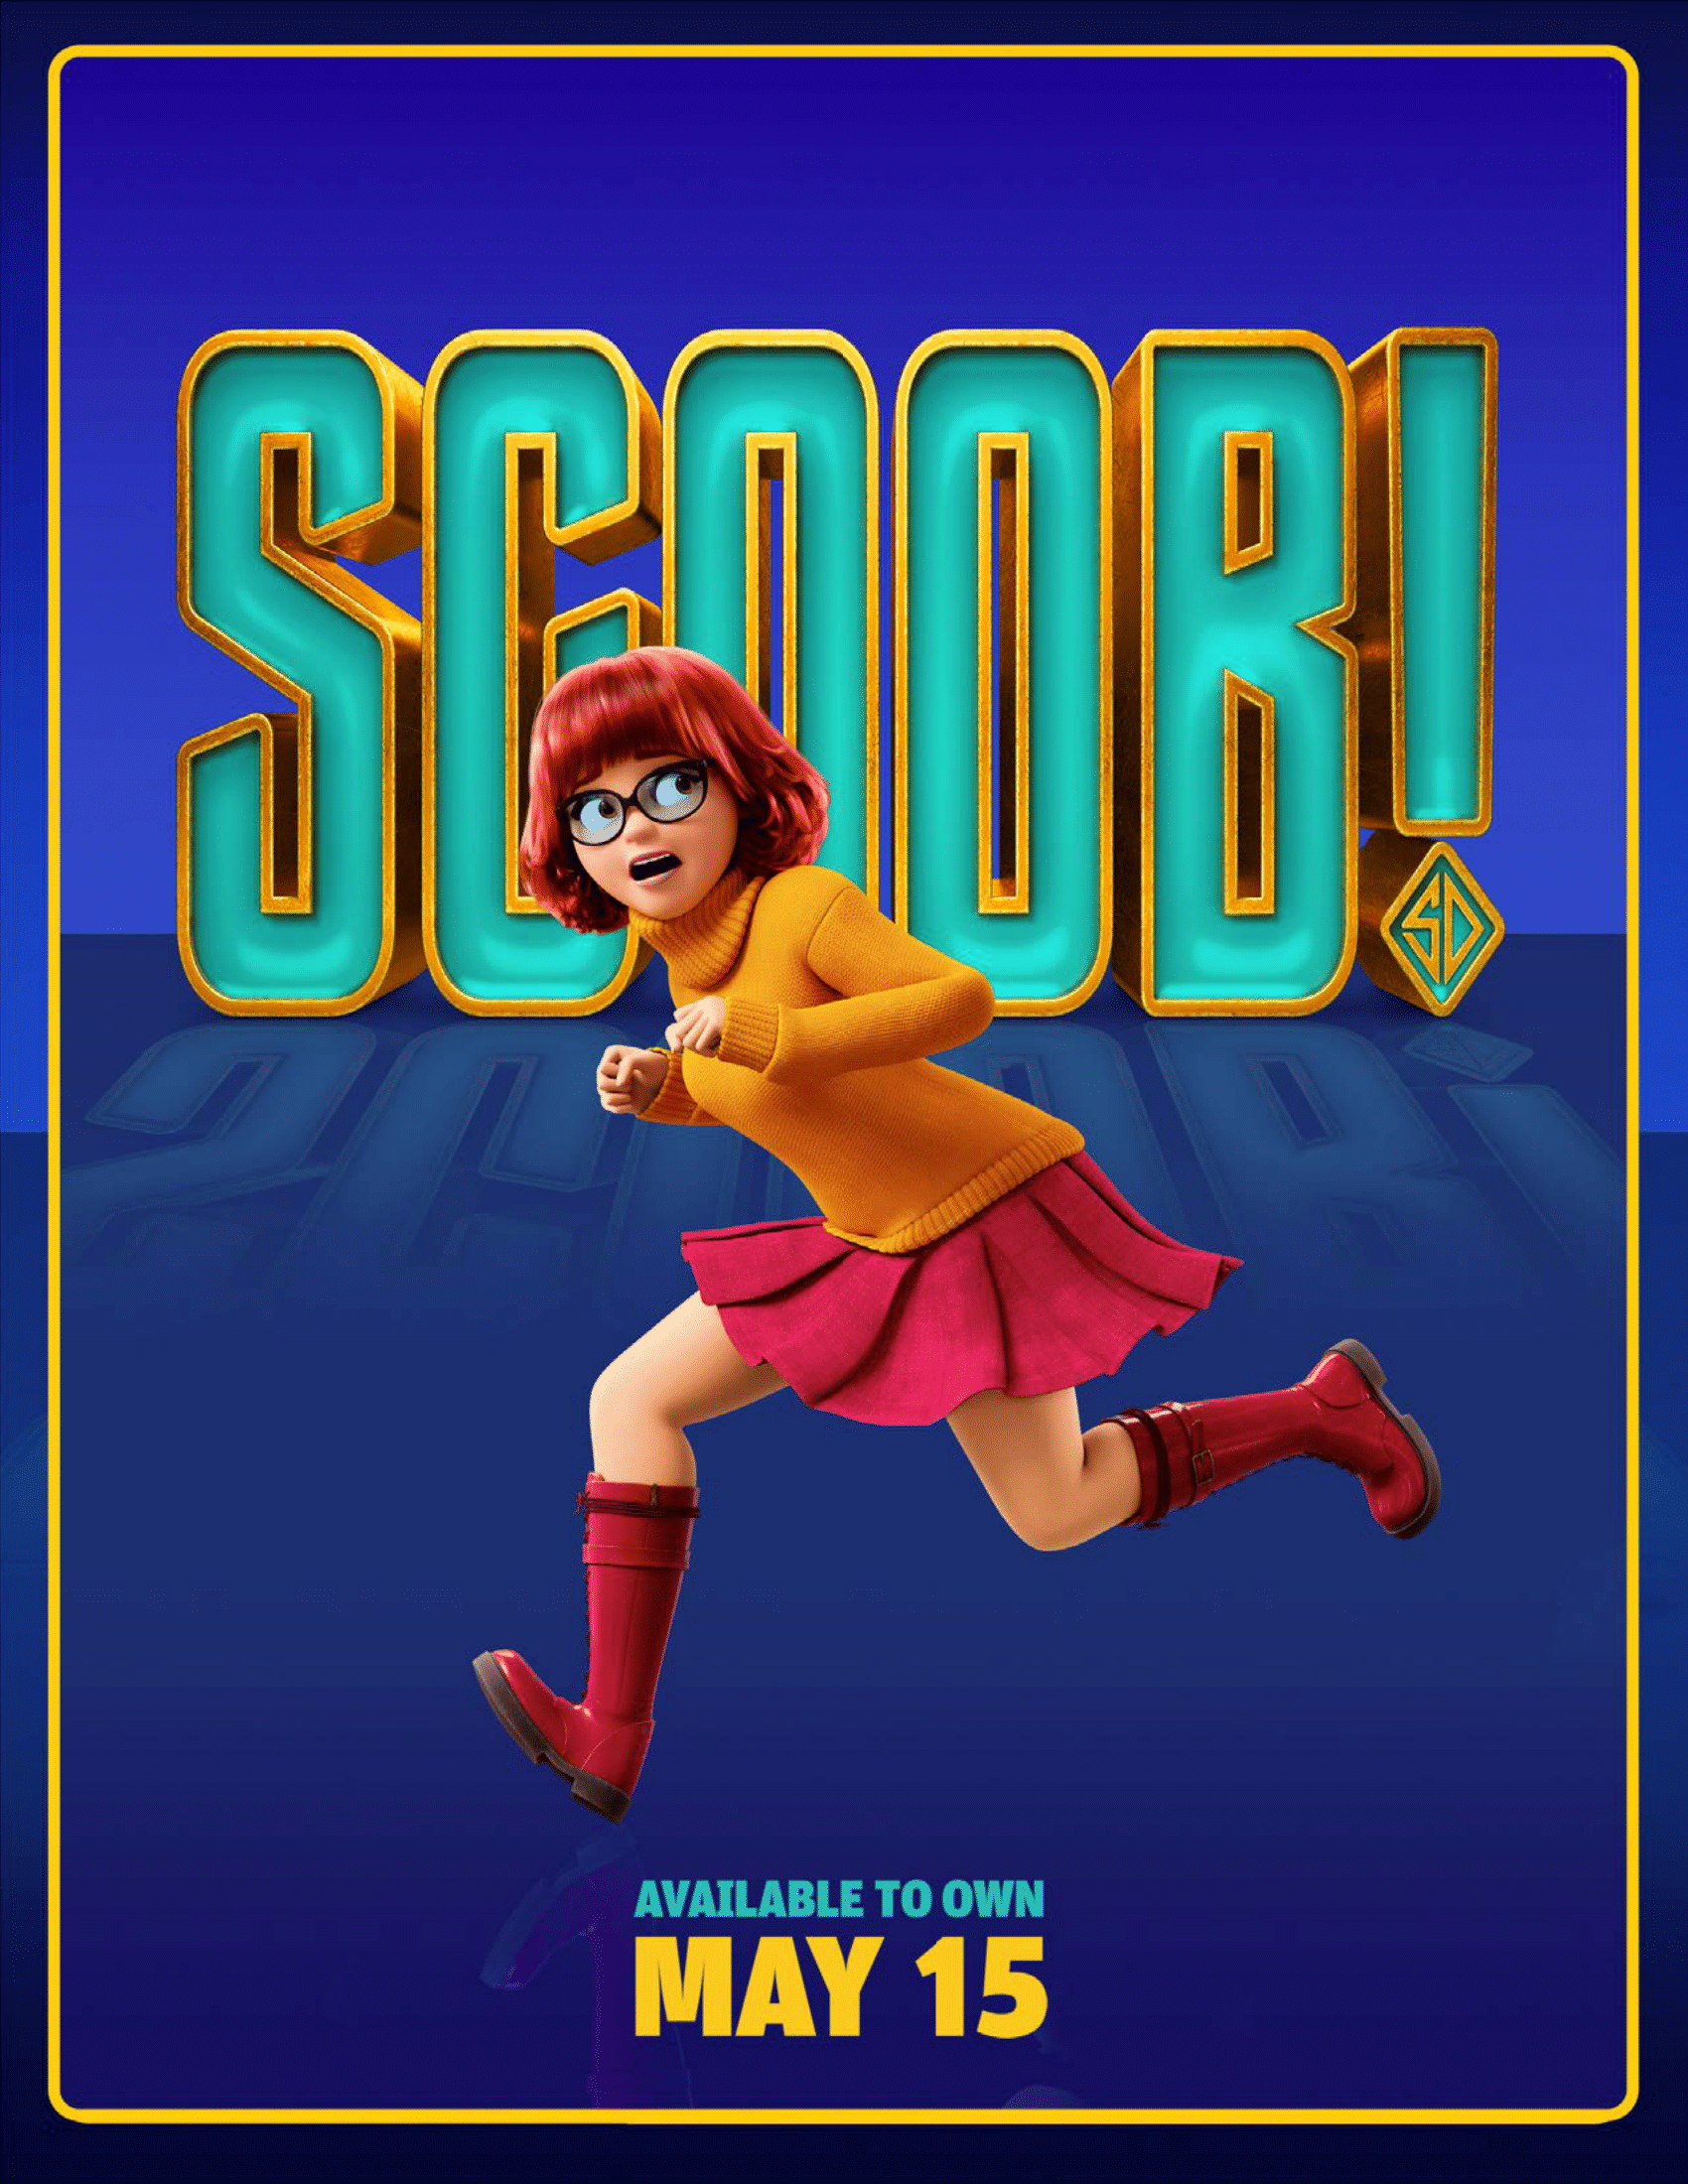 Velma Dinkley - Scooby Doo - Zerochan Anime Image Board